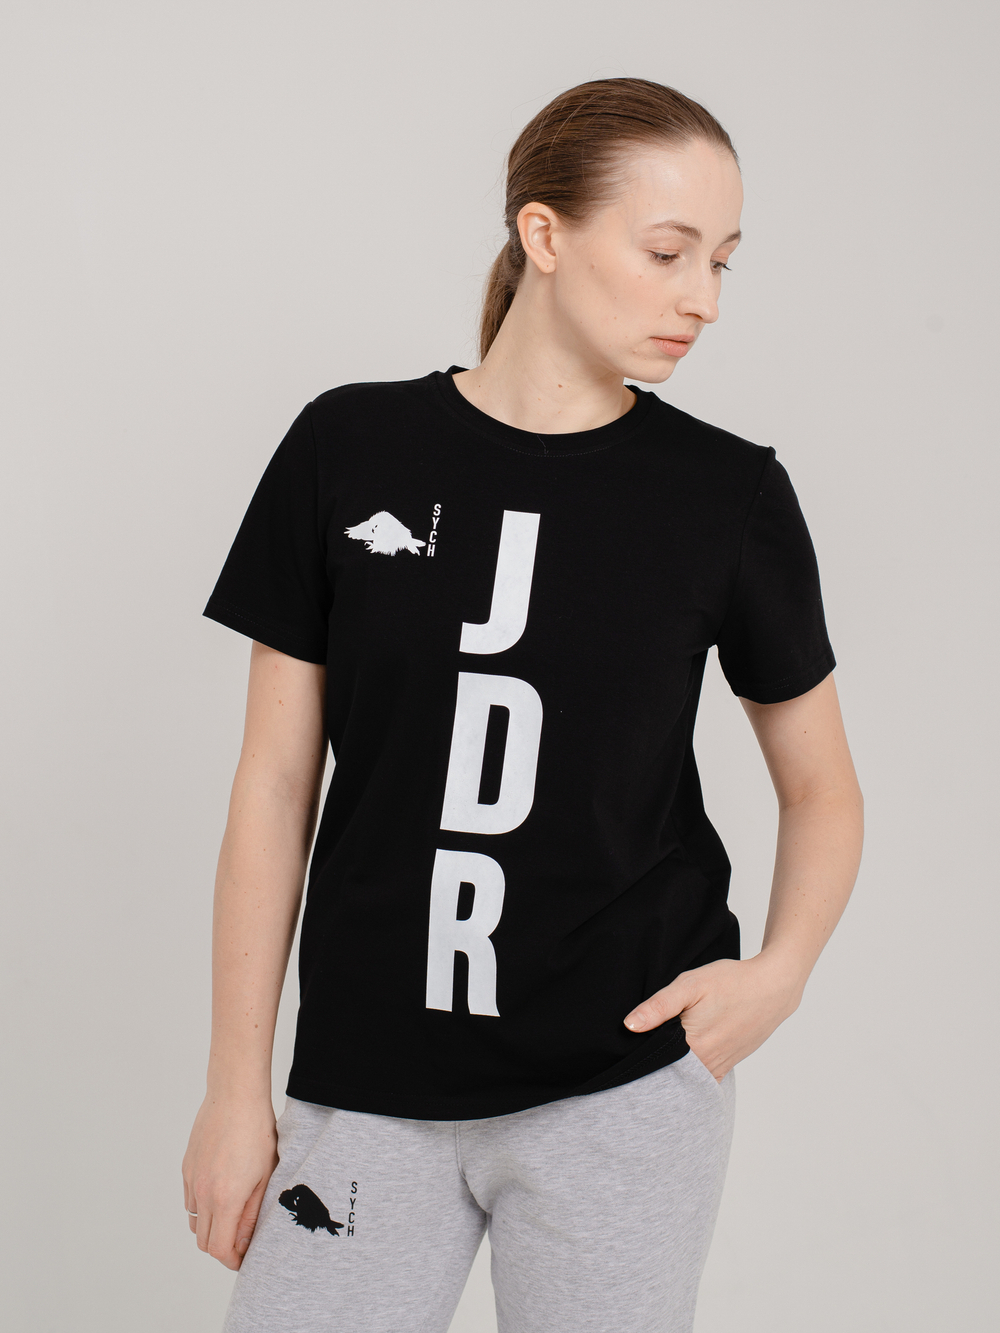 Футболка чёрная с принтом "JDR"